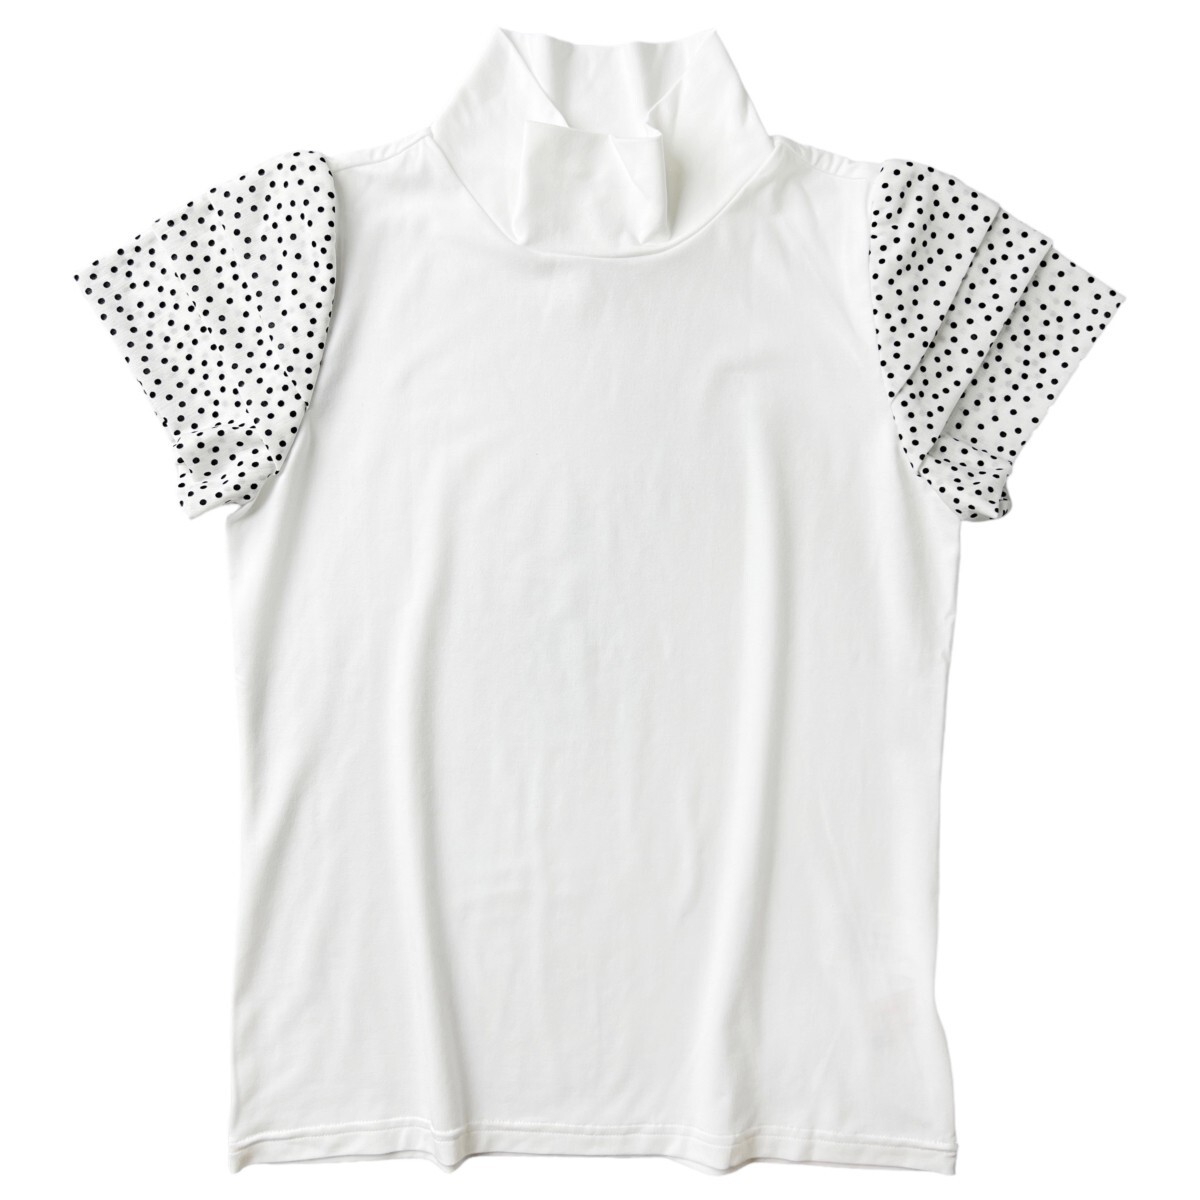 Mieko Wesako Noisy Noisy Noisy Swarovski Рубашка с коротким рукавом и высоким воротником 38 (M) Женская белая одежда для гольфа